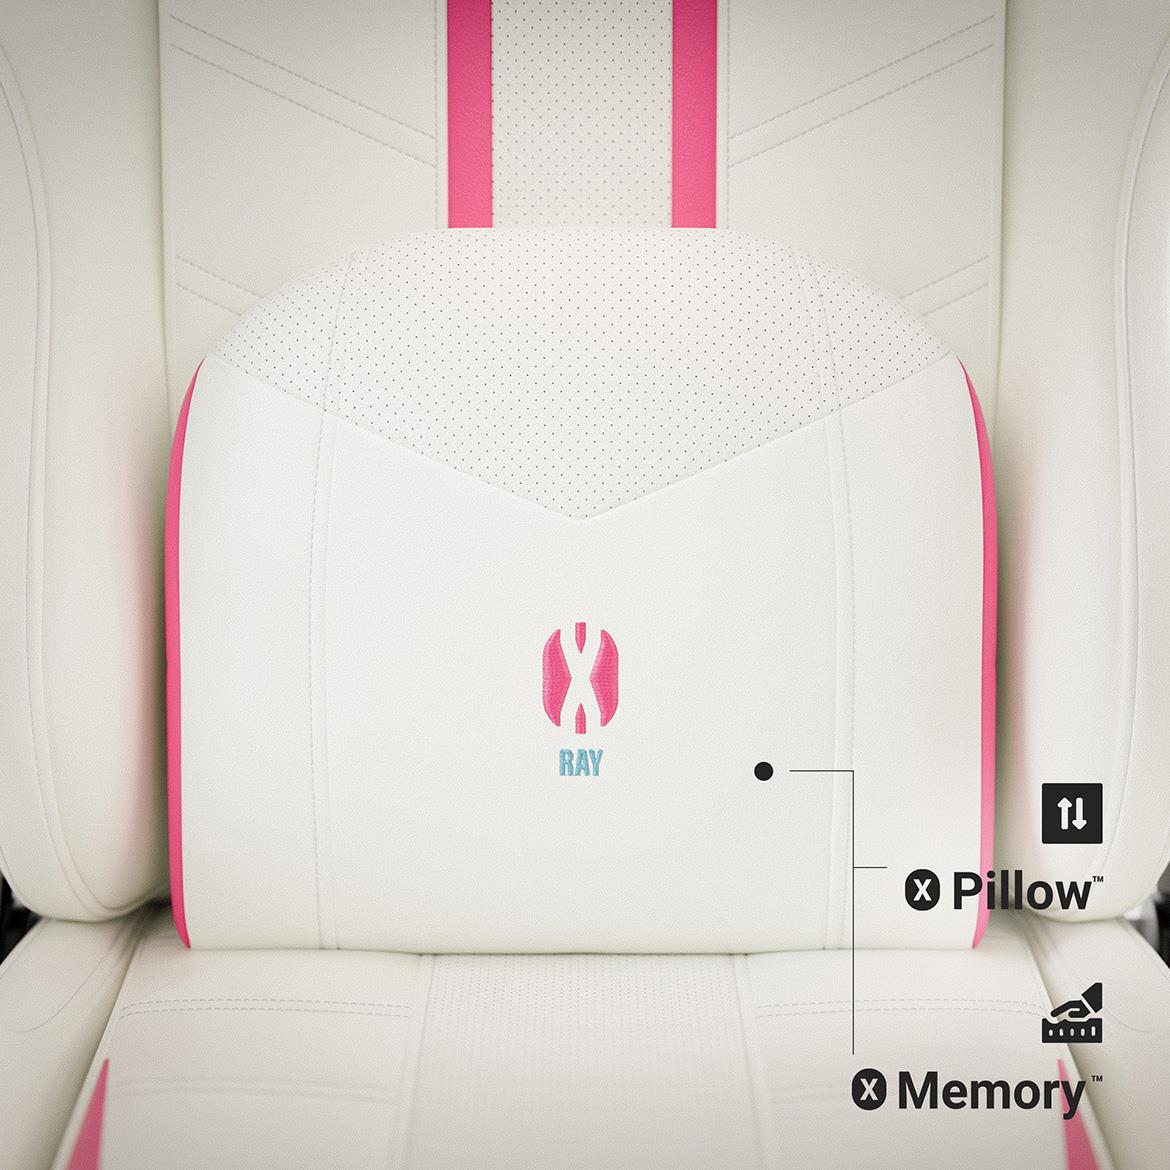 Diablo X-Ray 2.0 kancelarijska stolica 68x52x125 cm belo roze